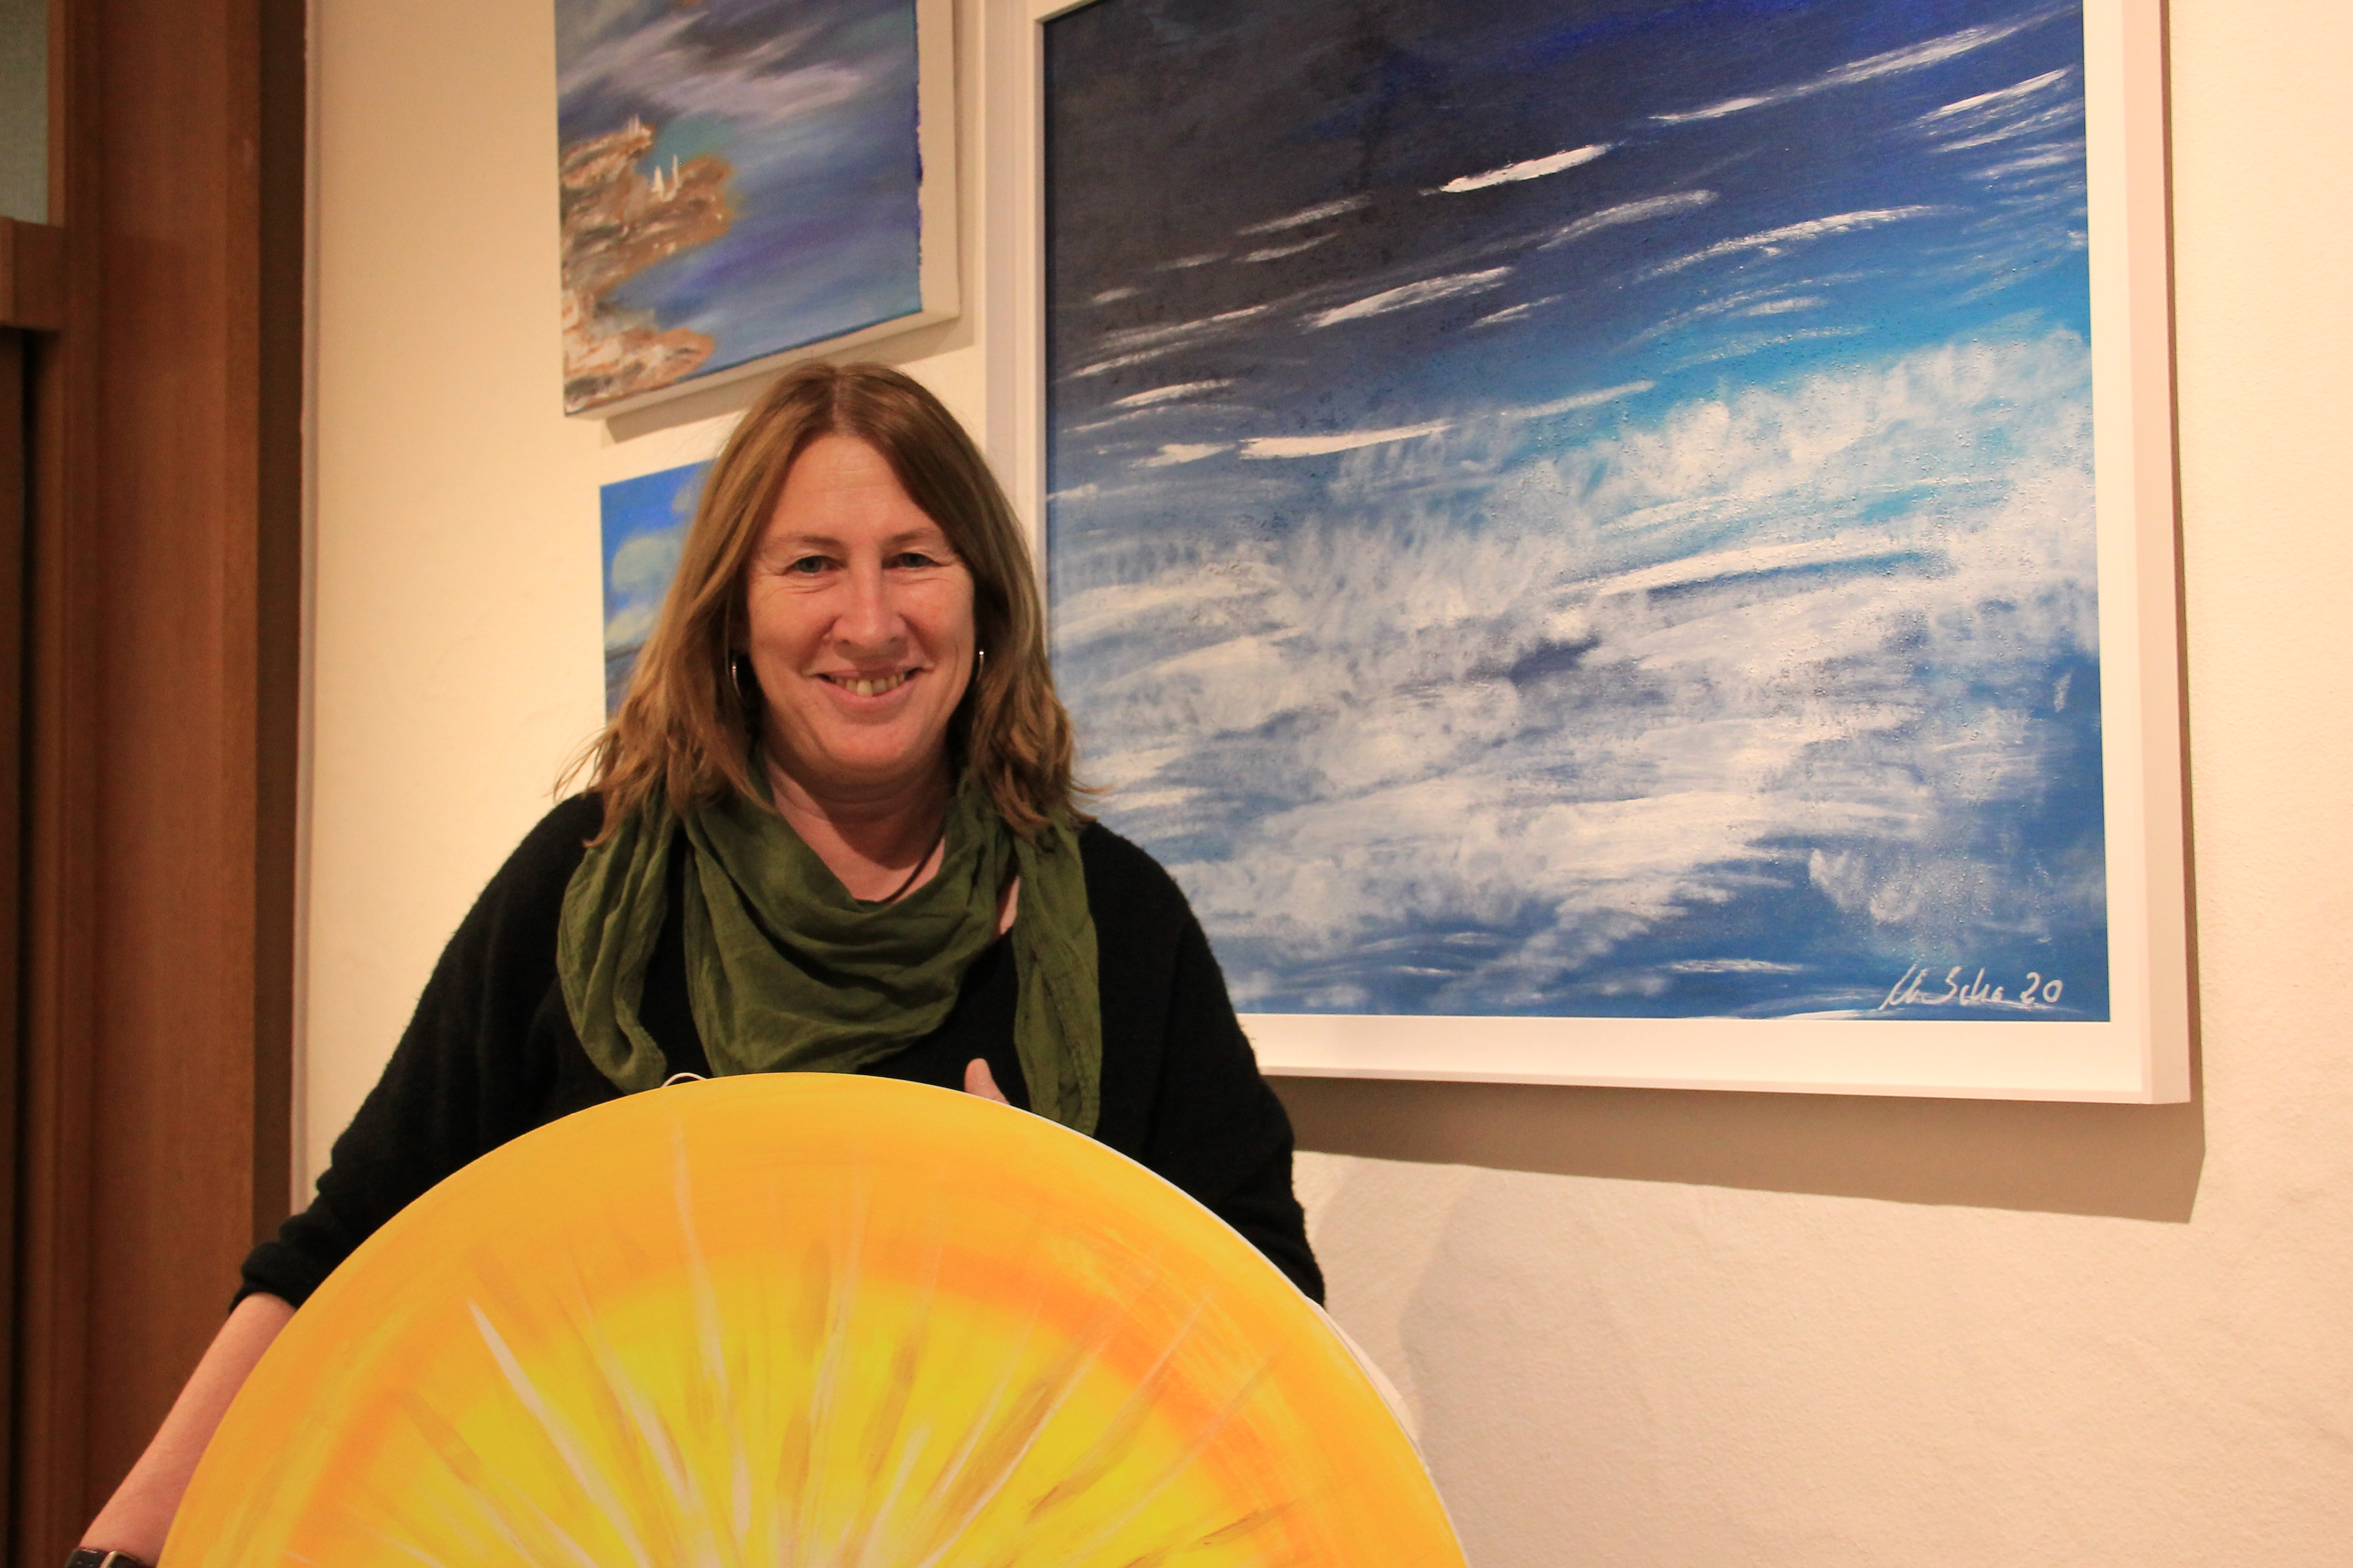 Künstlerin, die ein gelbes Sonnenbild in der Hand hält und vor blauen Meeransichten steht